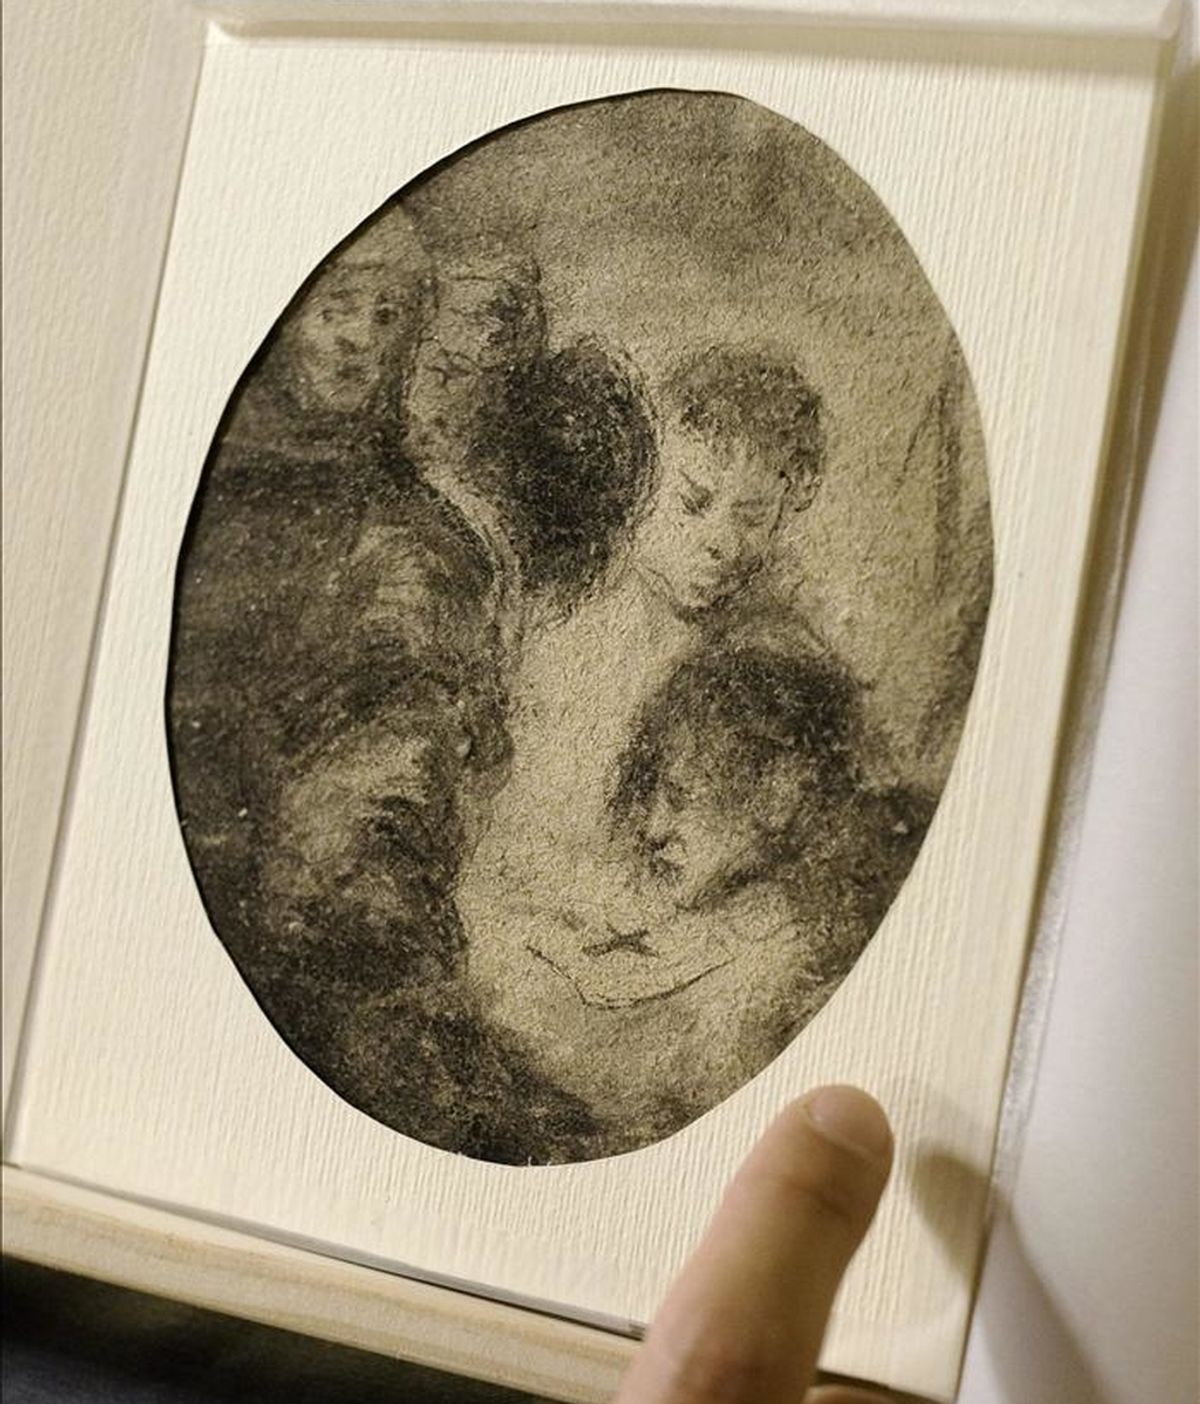 Vista de la obra "Escena de la Inquisición", de entre 1800 y 1828, atribuida al pintor aragonés Francisco de Goya, que ha sido presentada hoy por la Fundación Rafael Masó en el Ayuntamiento de Girona, procedente de una donación. EFE